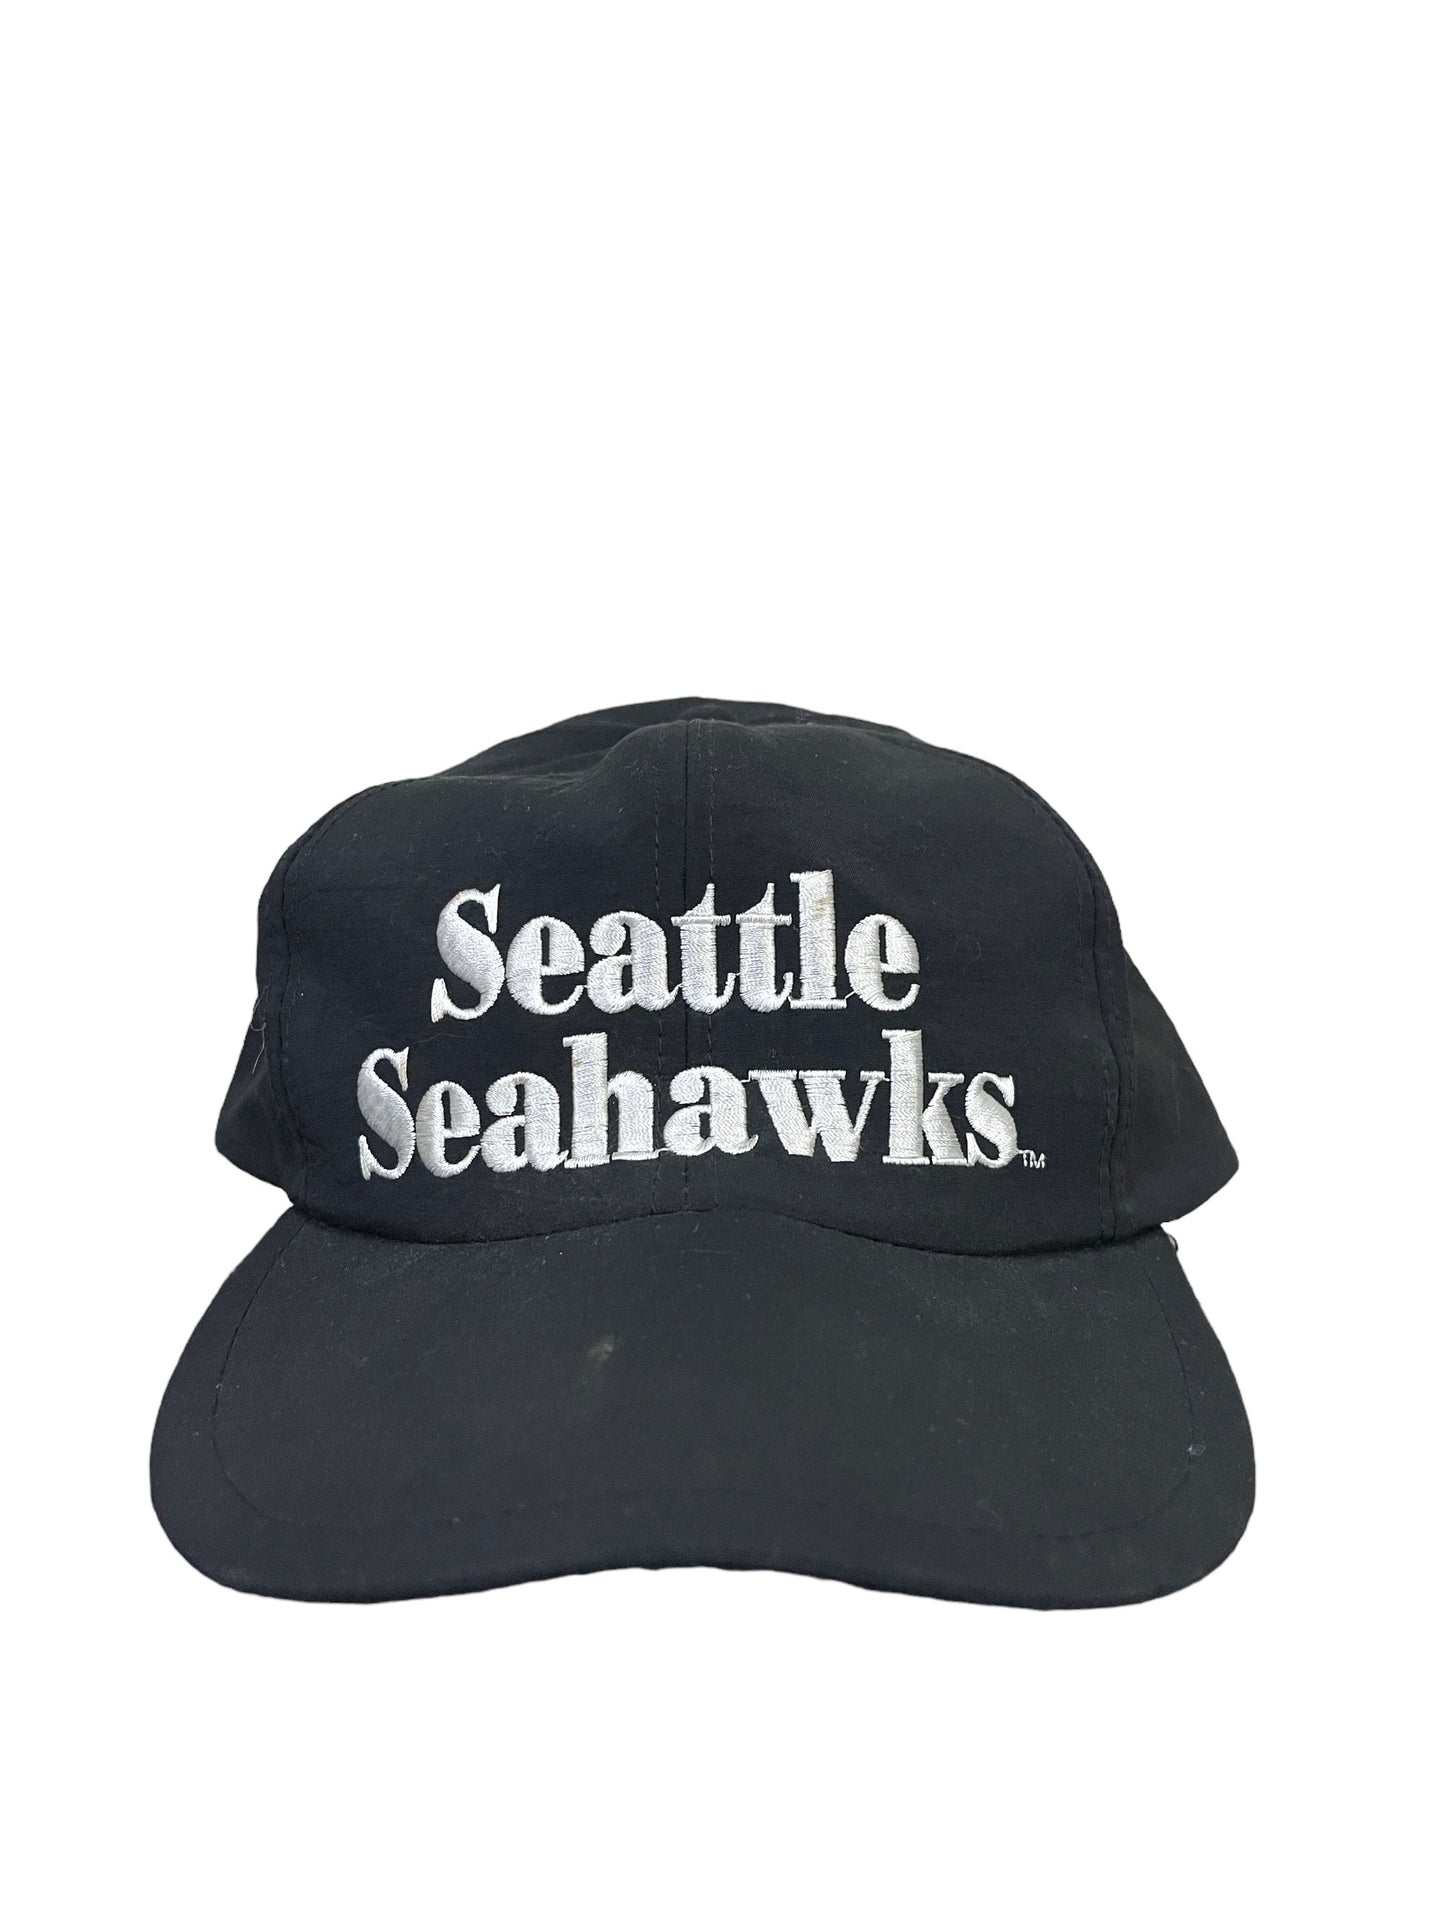 Vintage Seattle Seahawks Snapback